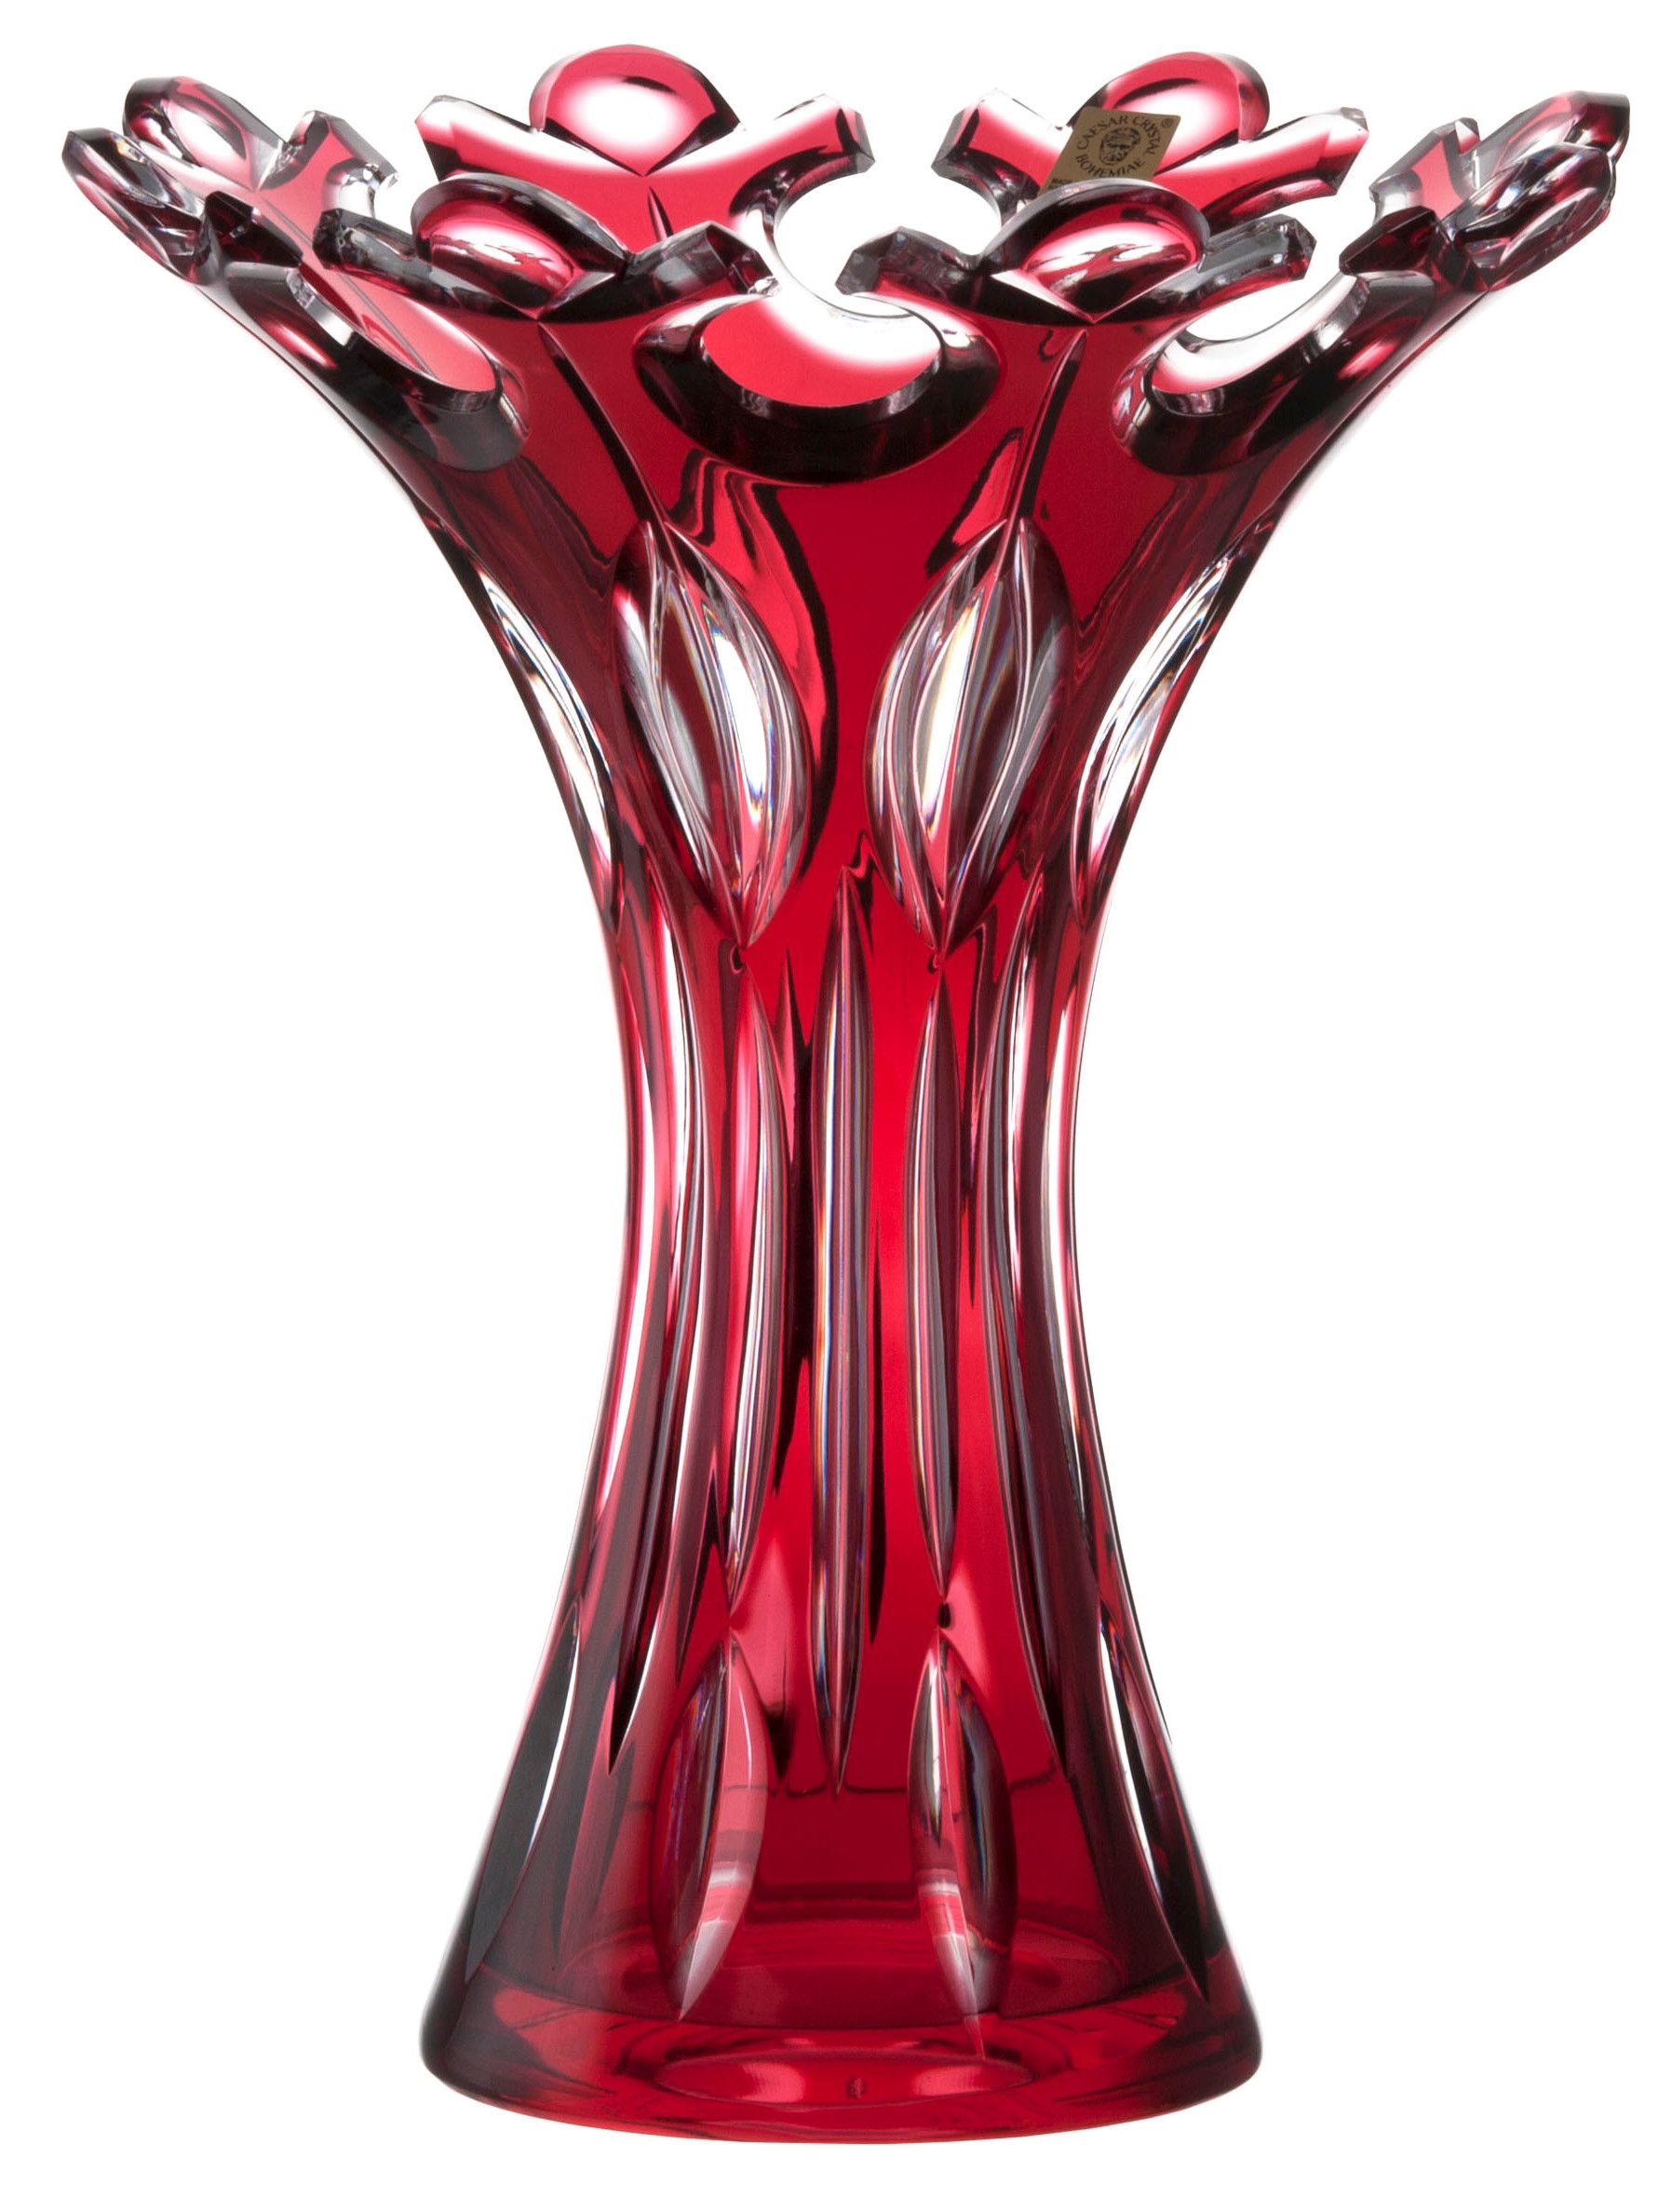 Krištáľová váza Flamenco, farba rubínová, výška 250 mm